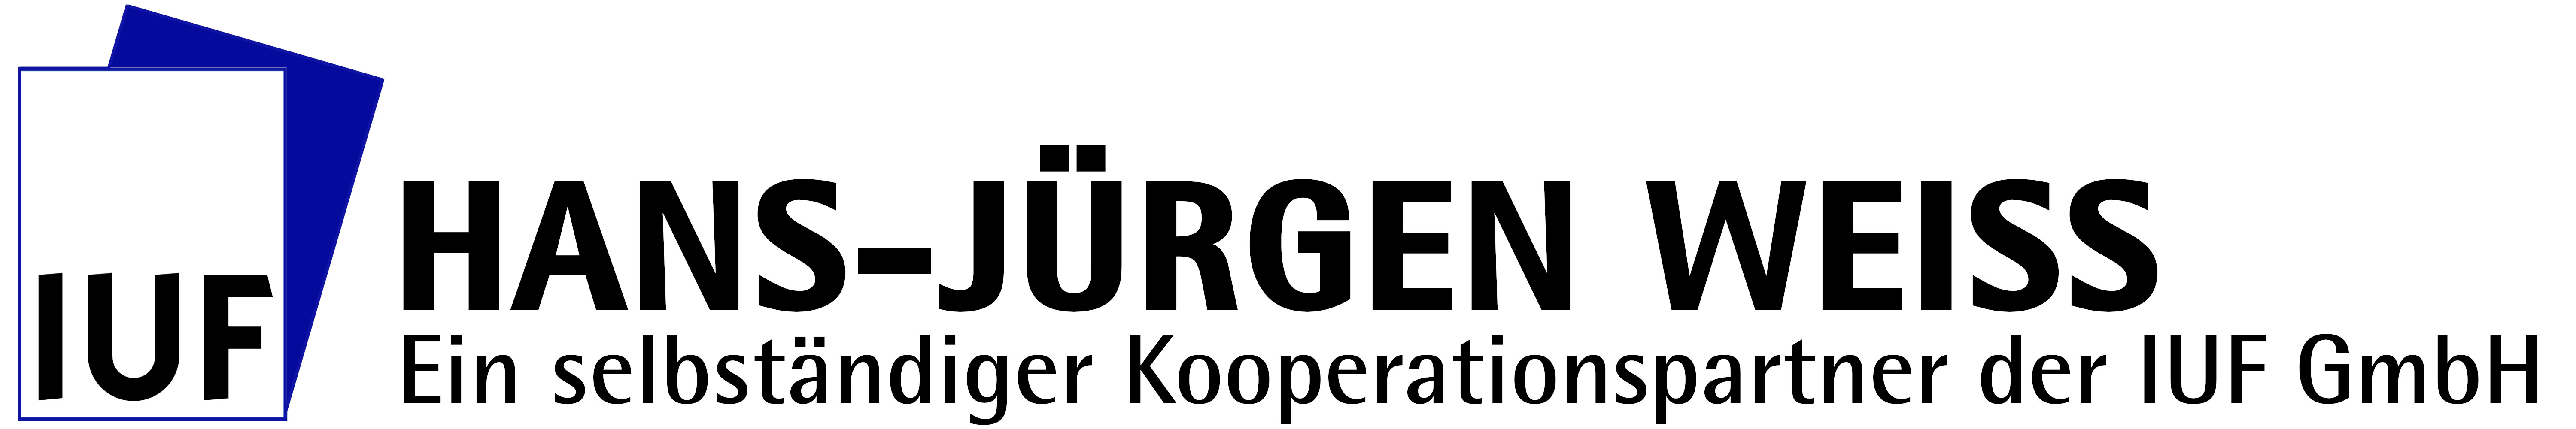 HANS-JÜRGEN WEISS (Logo)